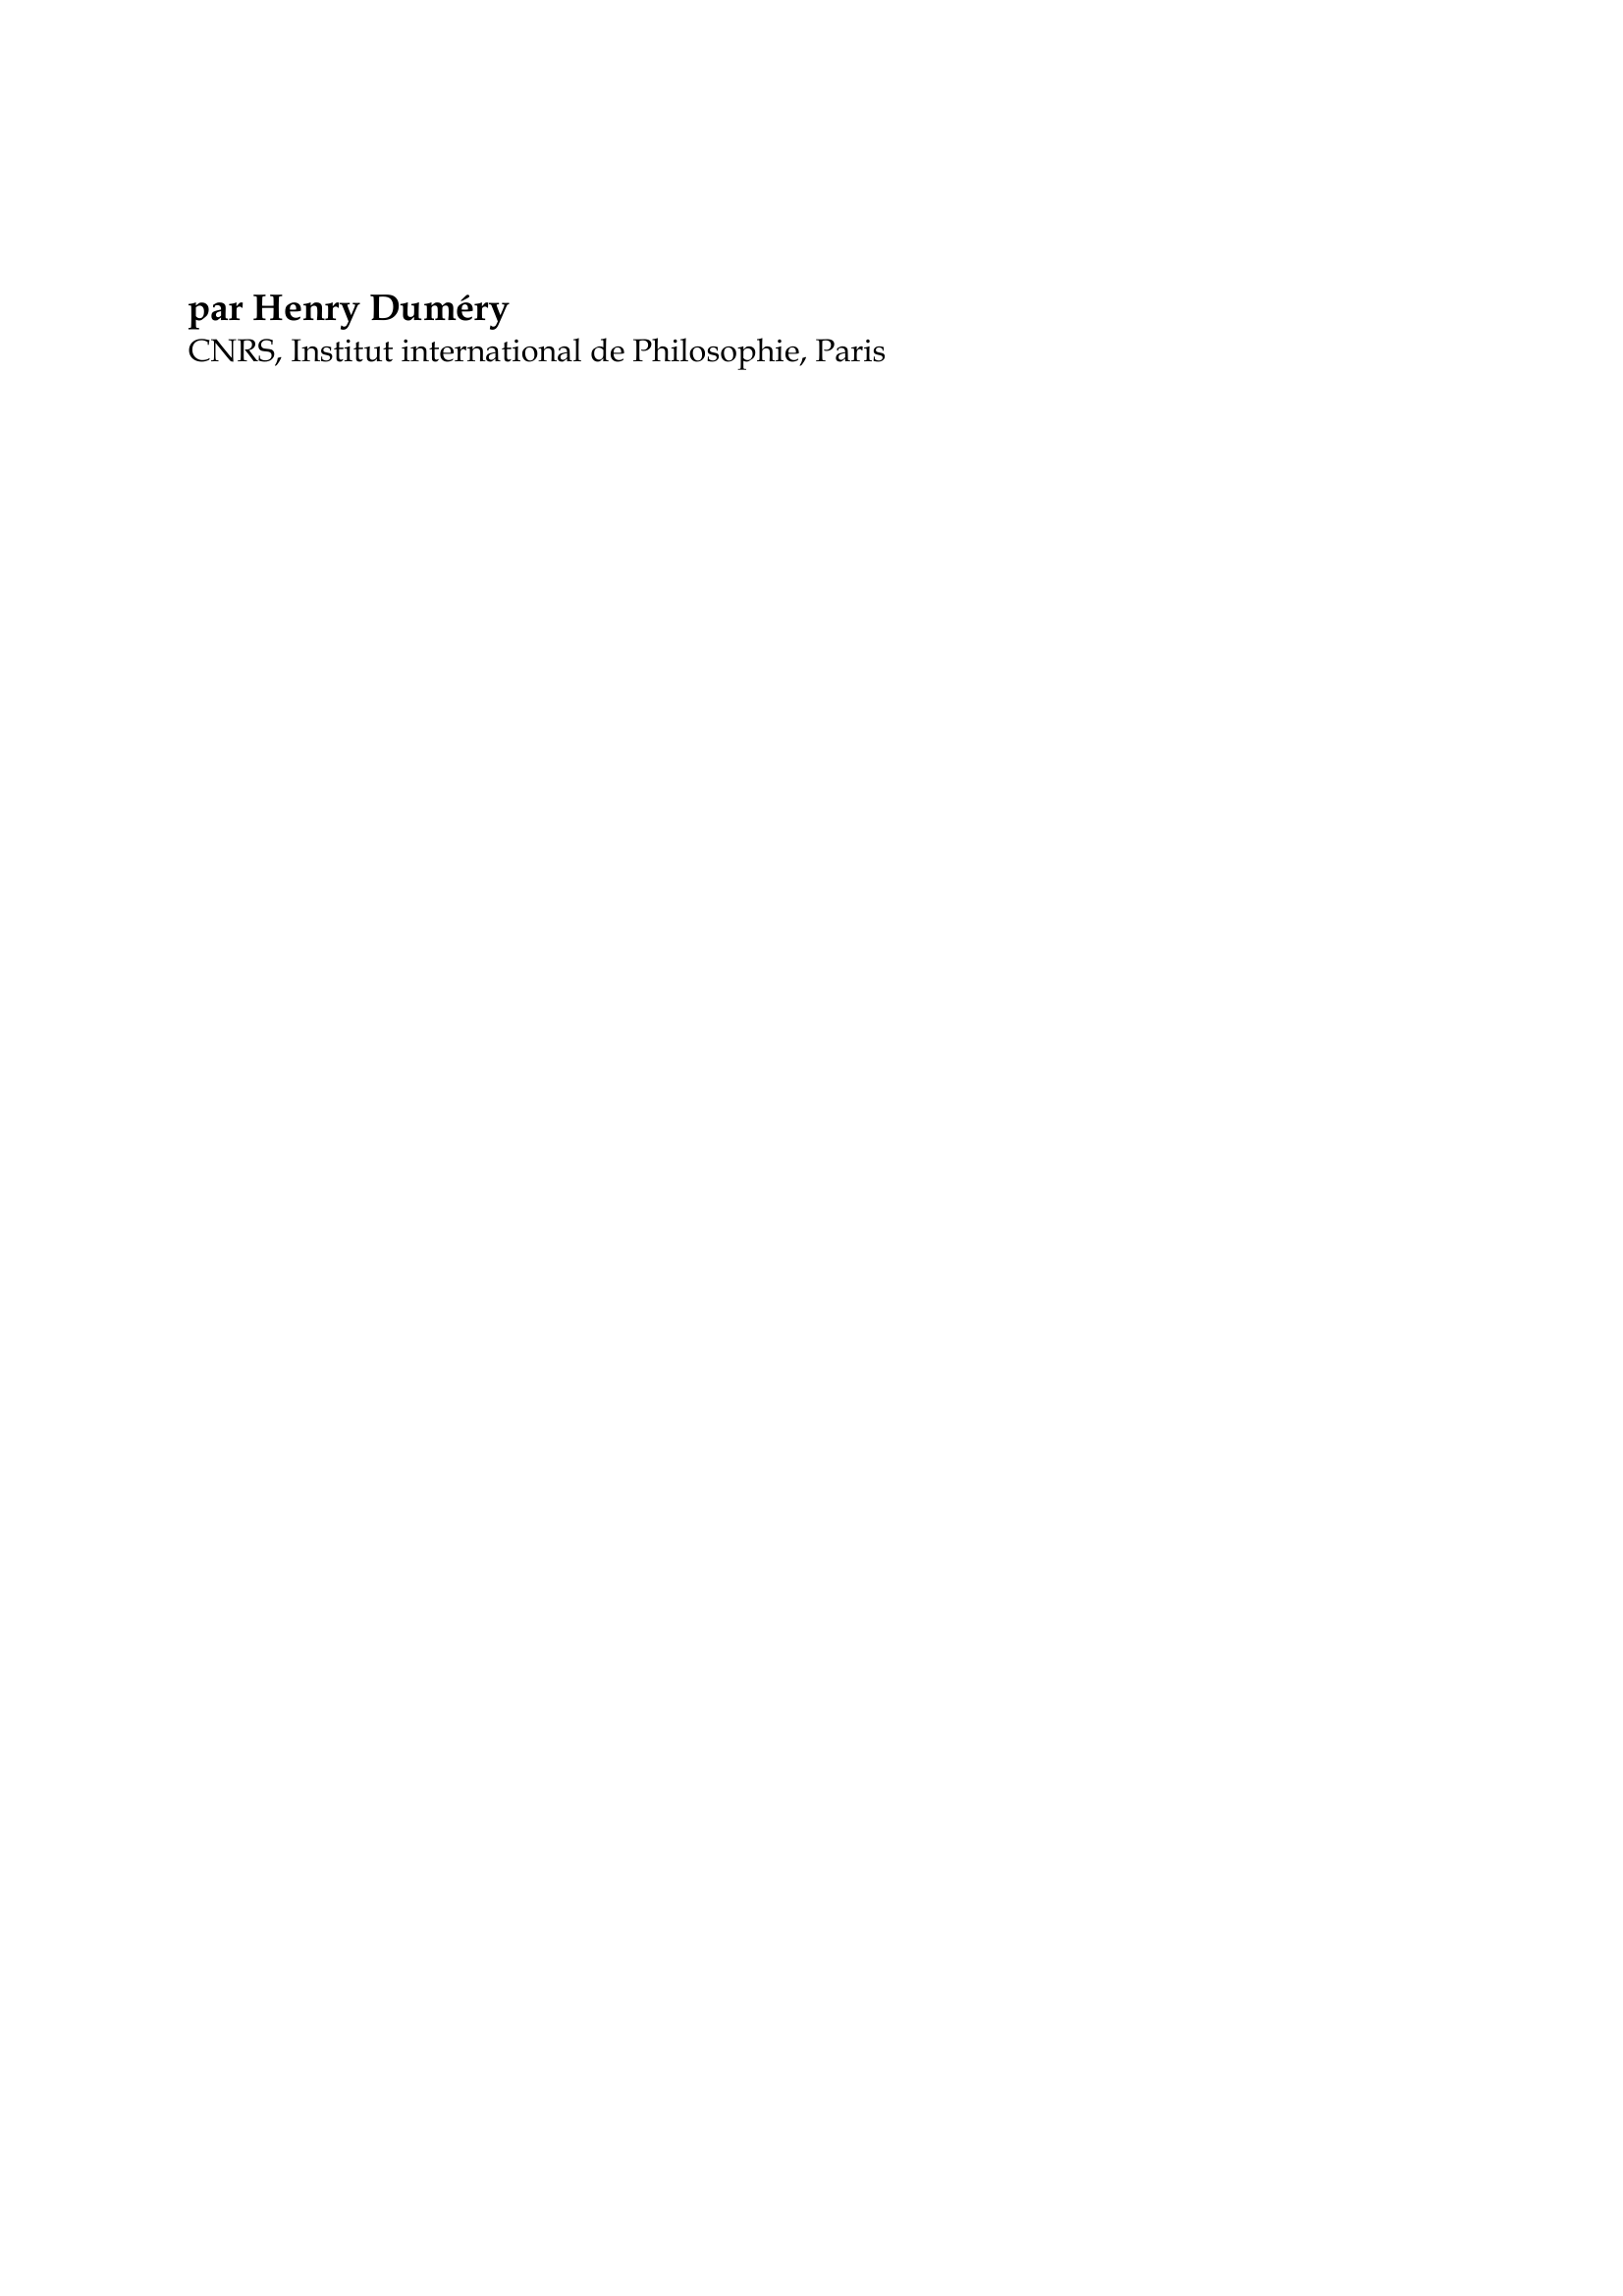 Prévisualisation du document Gaston Bachelard

par Henry Duméry
CNRS, Institut international de Philosophie, Paris

" Il suffit que nous parlions d'un objet pour nous croire objectifs ".